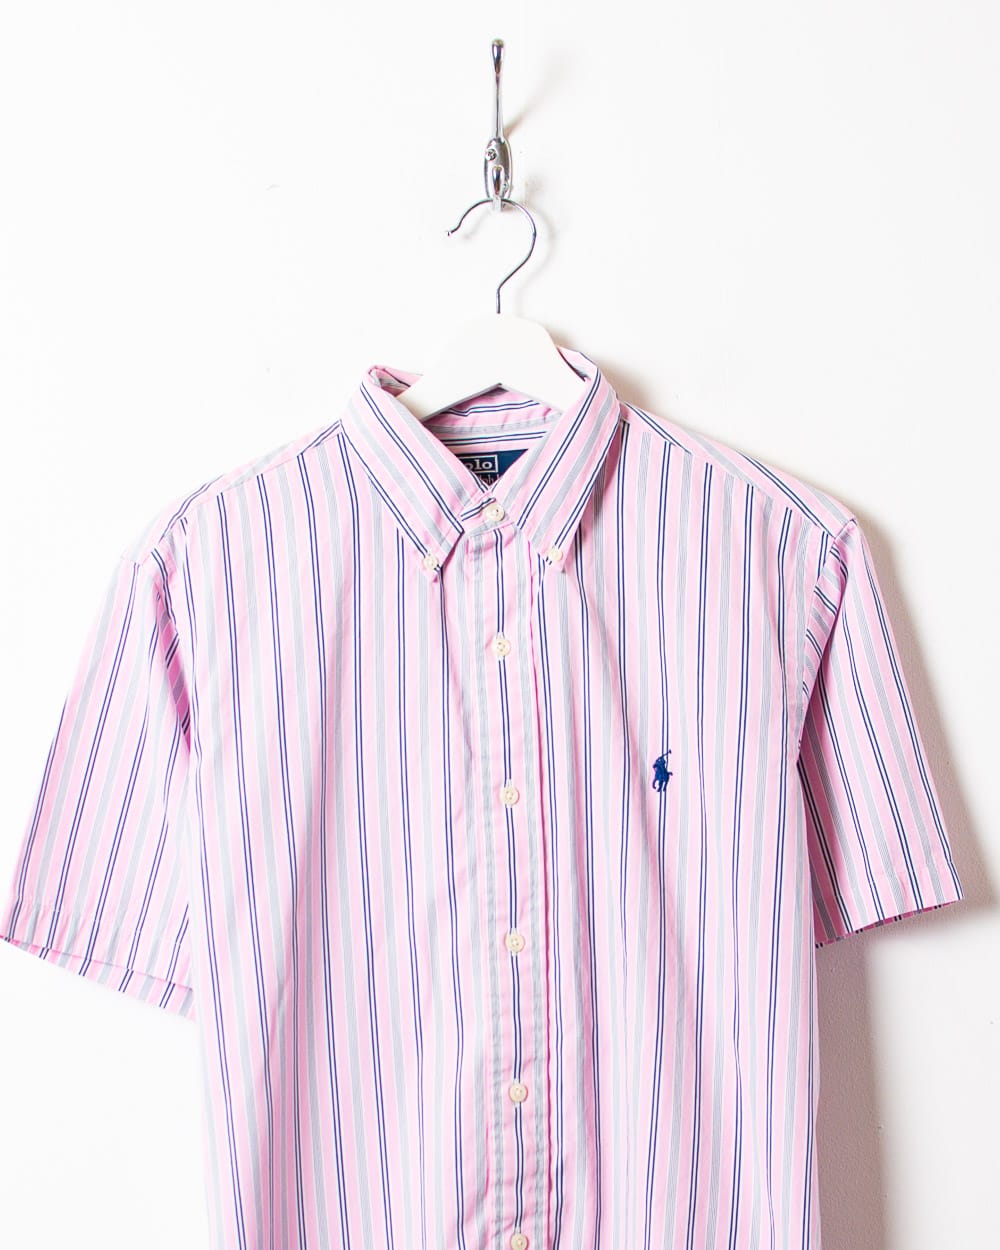 Pink Polo Ralph Lauren Striped Short Sleeved Shirt - Medium